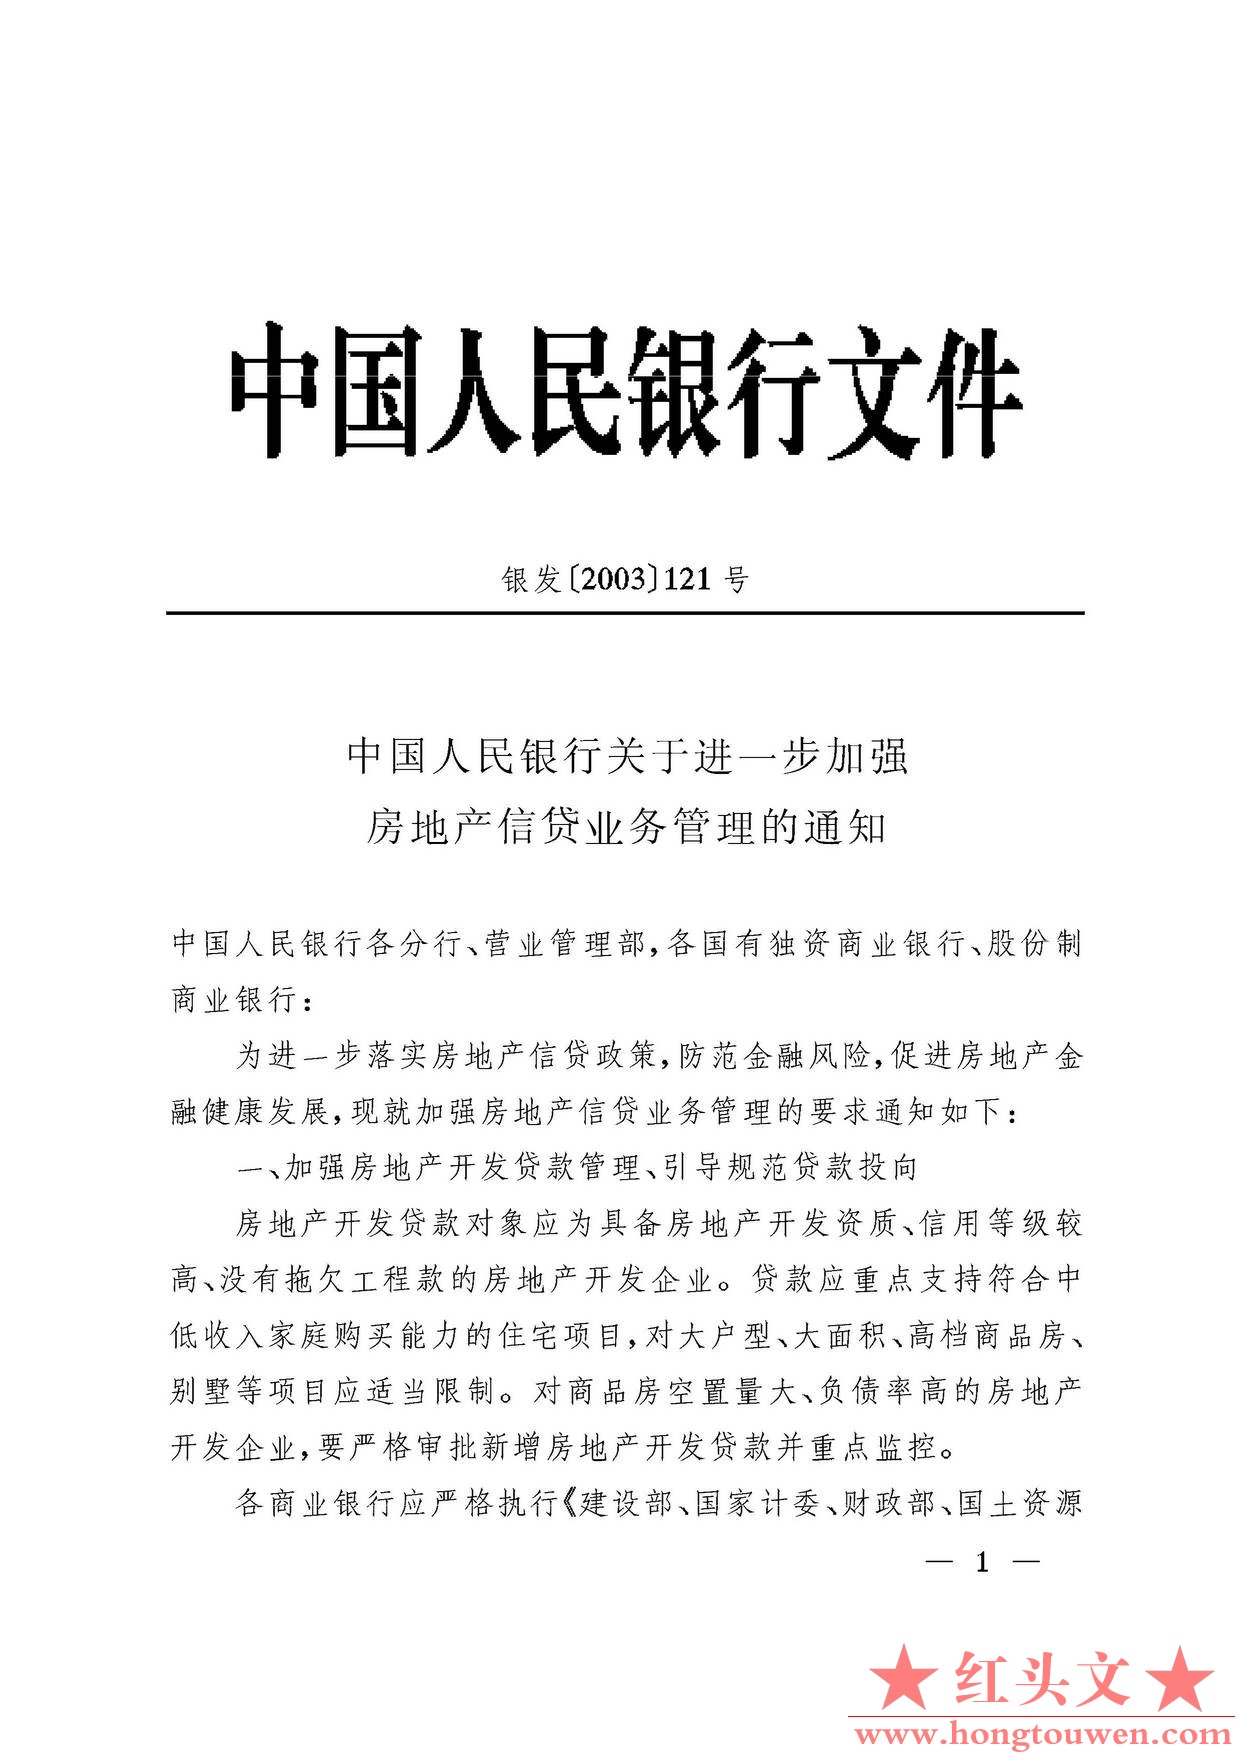 银发[2003]121号-中国人民银行关于进一步加强房地产信贷业务管理的通知_页面_1.jpg.jpg